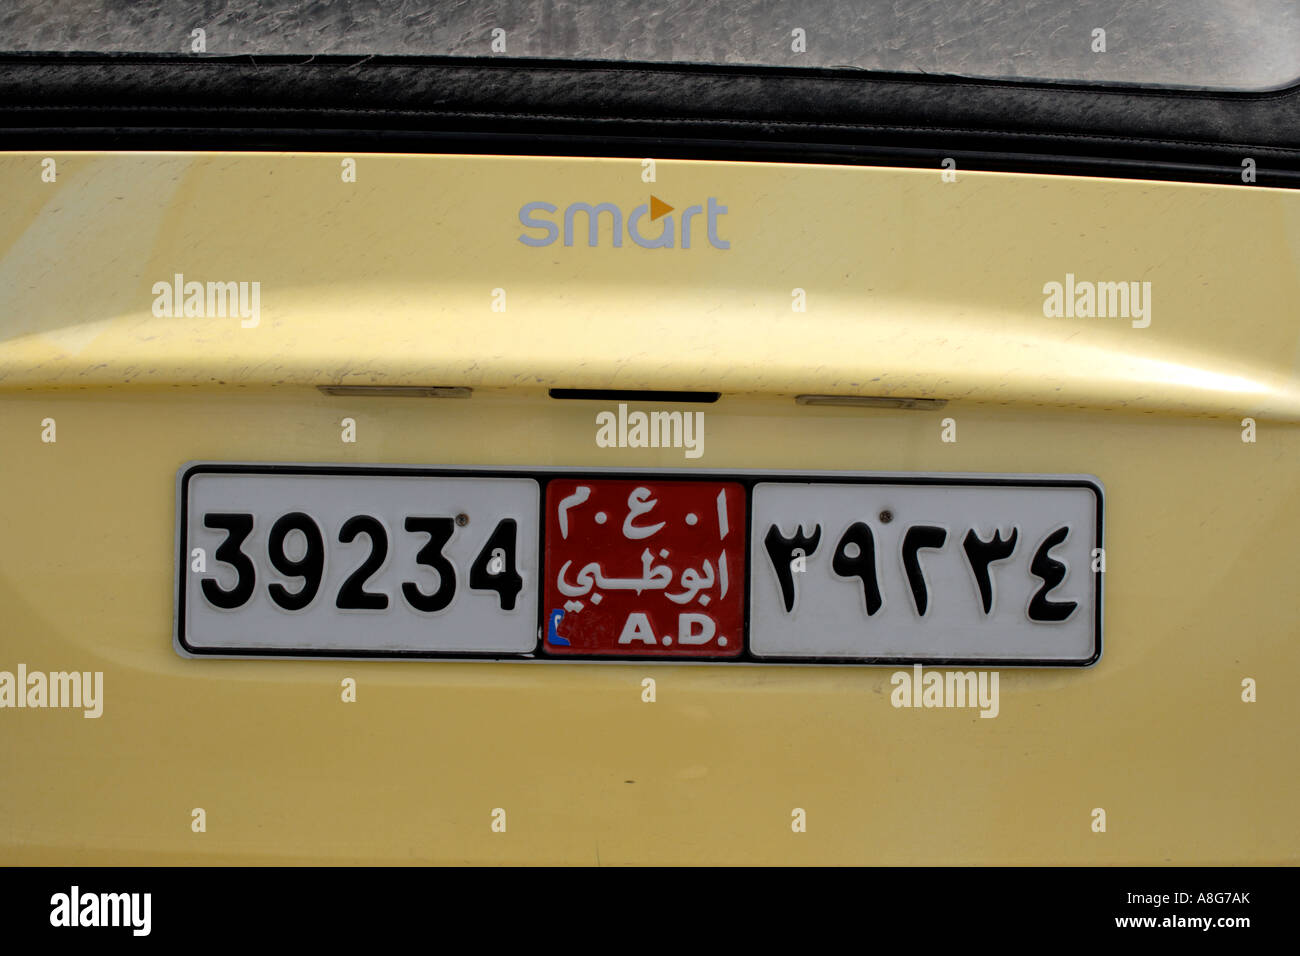 Licenza auto piastra su giallo Smart Auto, Abu Dhabi, negli Emirati Arabi Uniti. Foto di Willy Matheisl Foto Stock